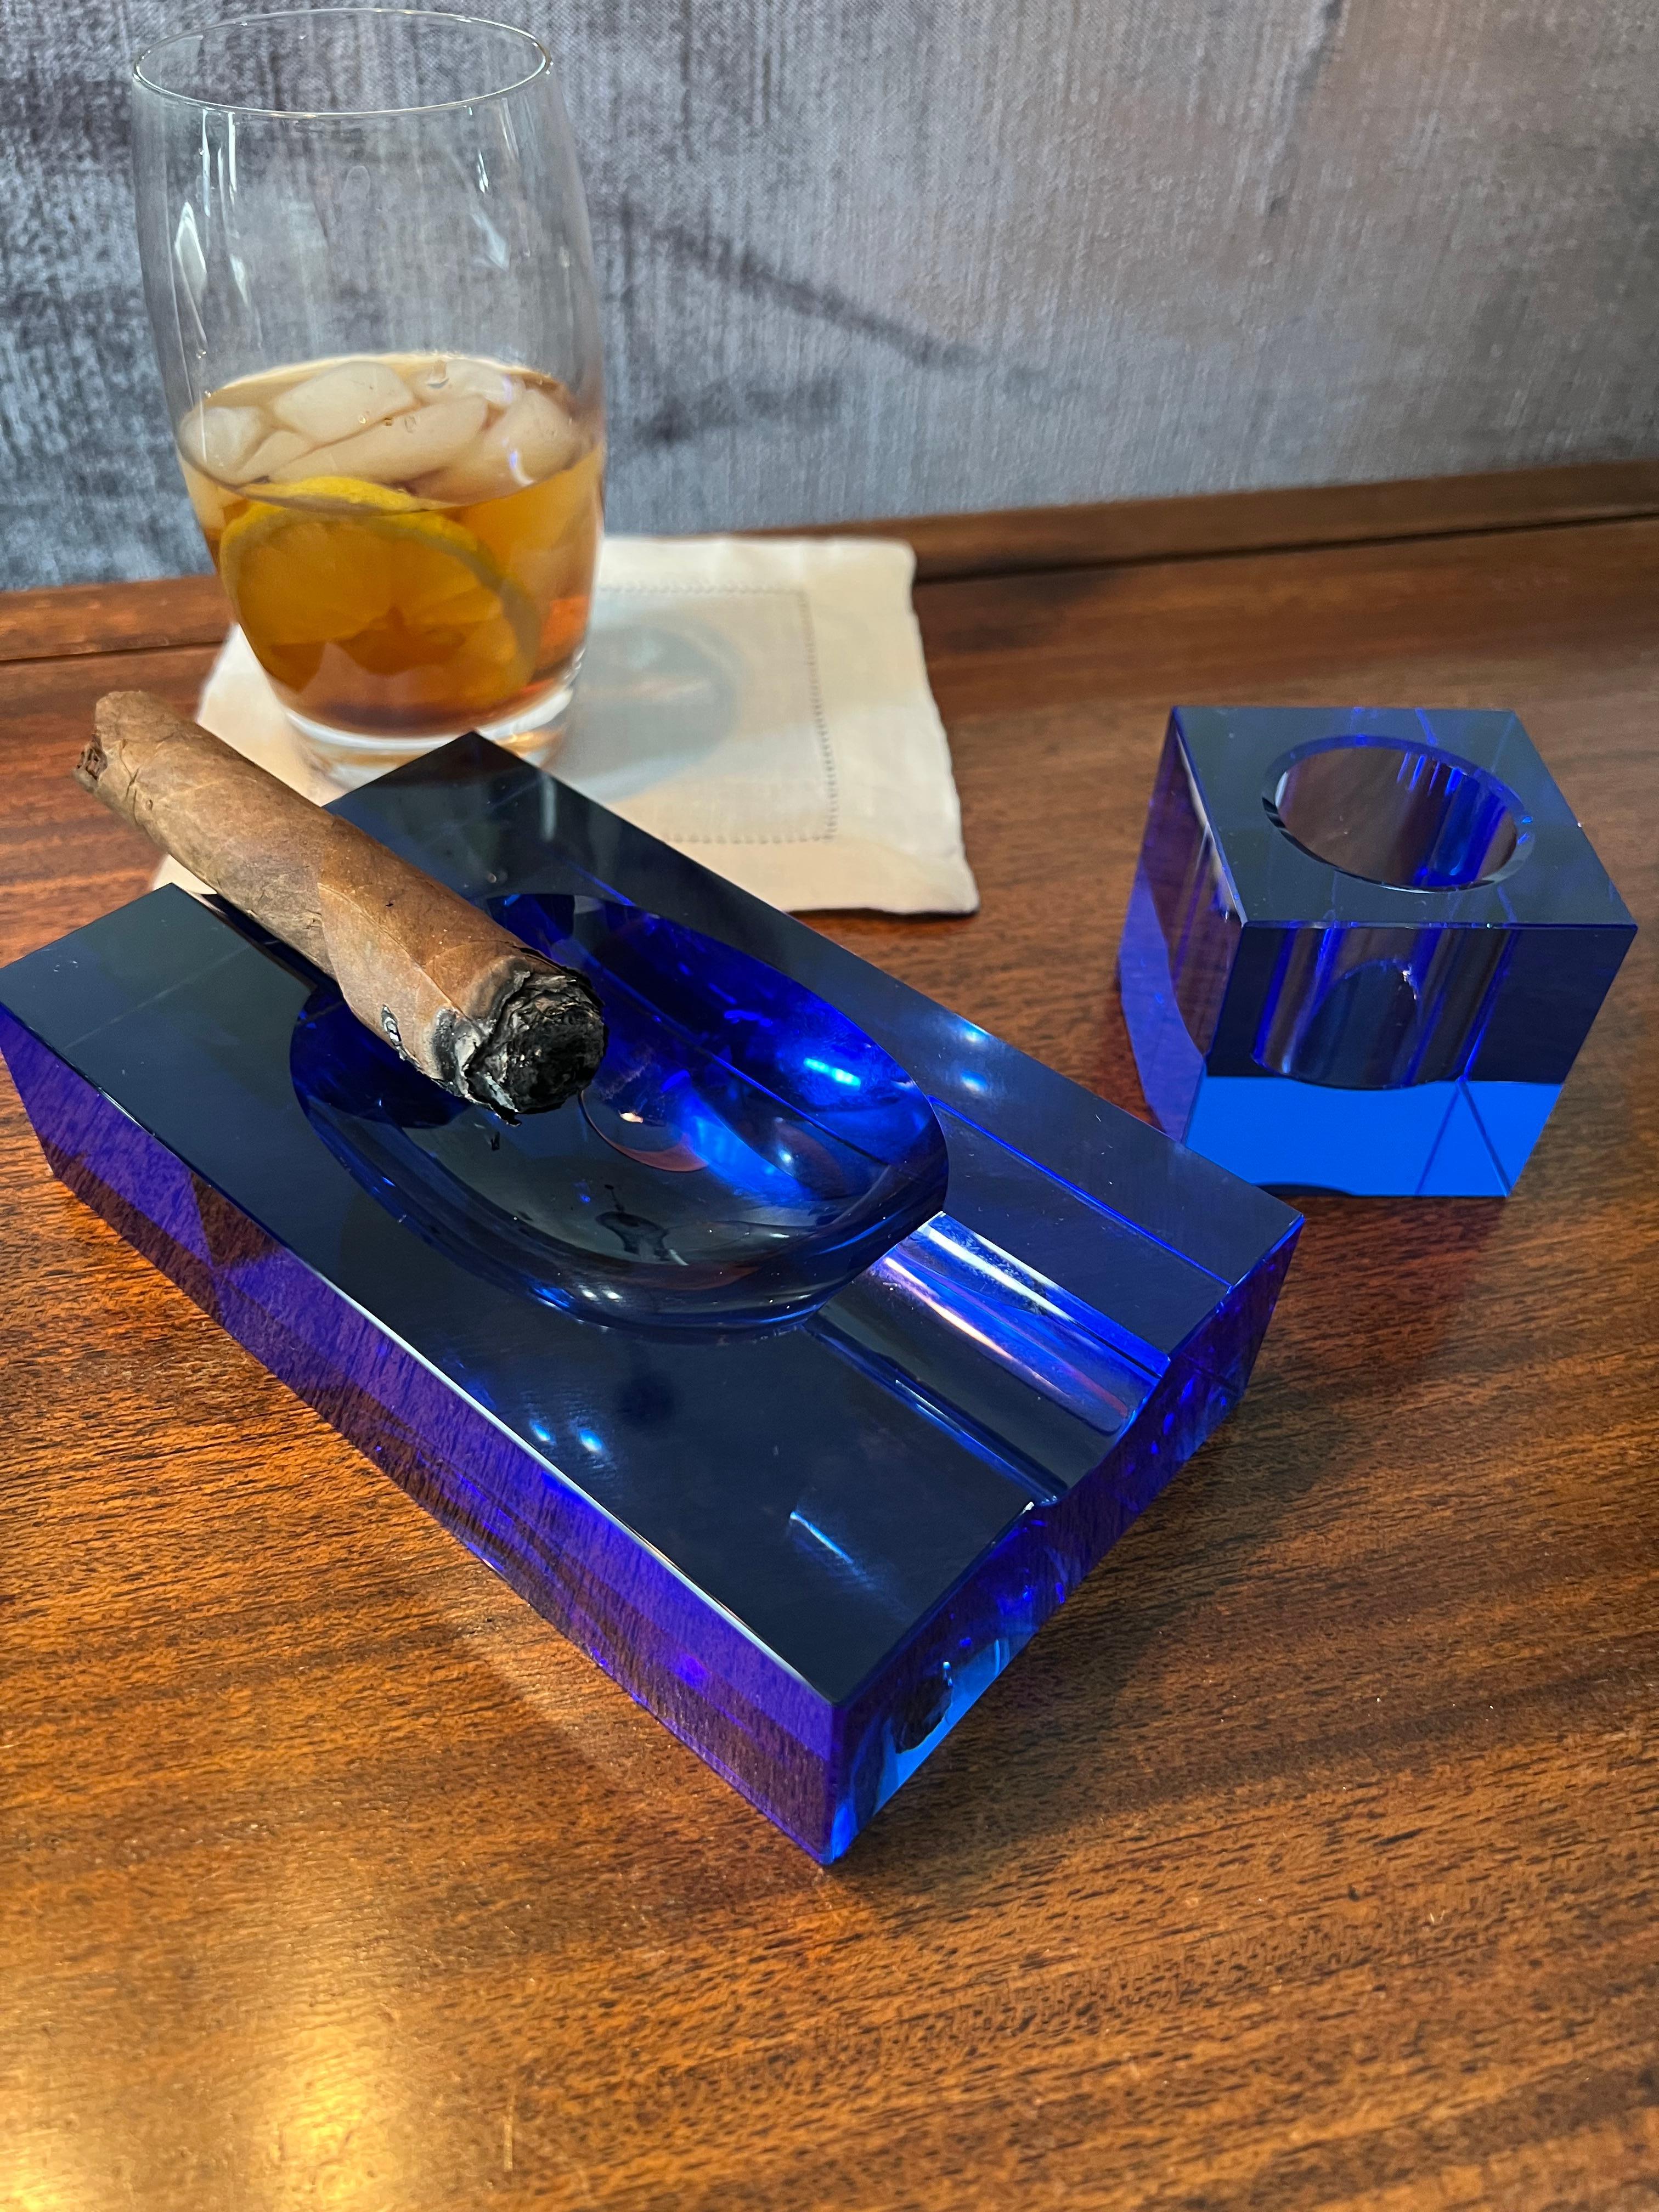 Ein wirklich atemberaubender kobaltblauer Aschenbecher, perfekt für die gelegentlichen Zigarren, 420er oder französische Zigaretten! Eine Bereicherung für jeden Schreibtisch, jede Bar und jedes Raucherzimmer.

Der Aschenbecher wird auch mit einem